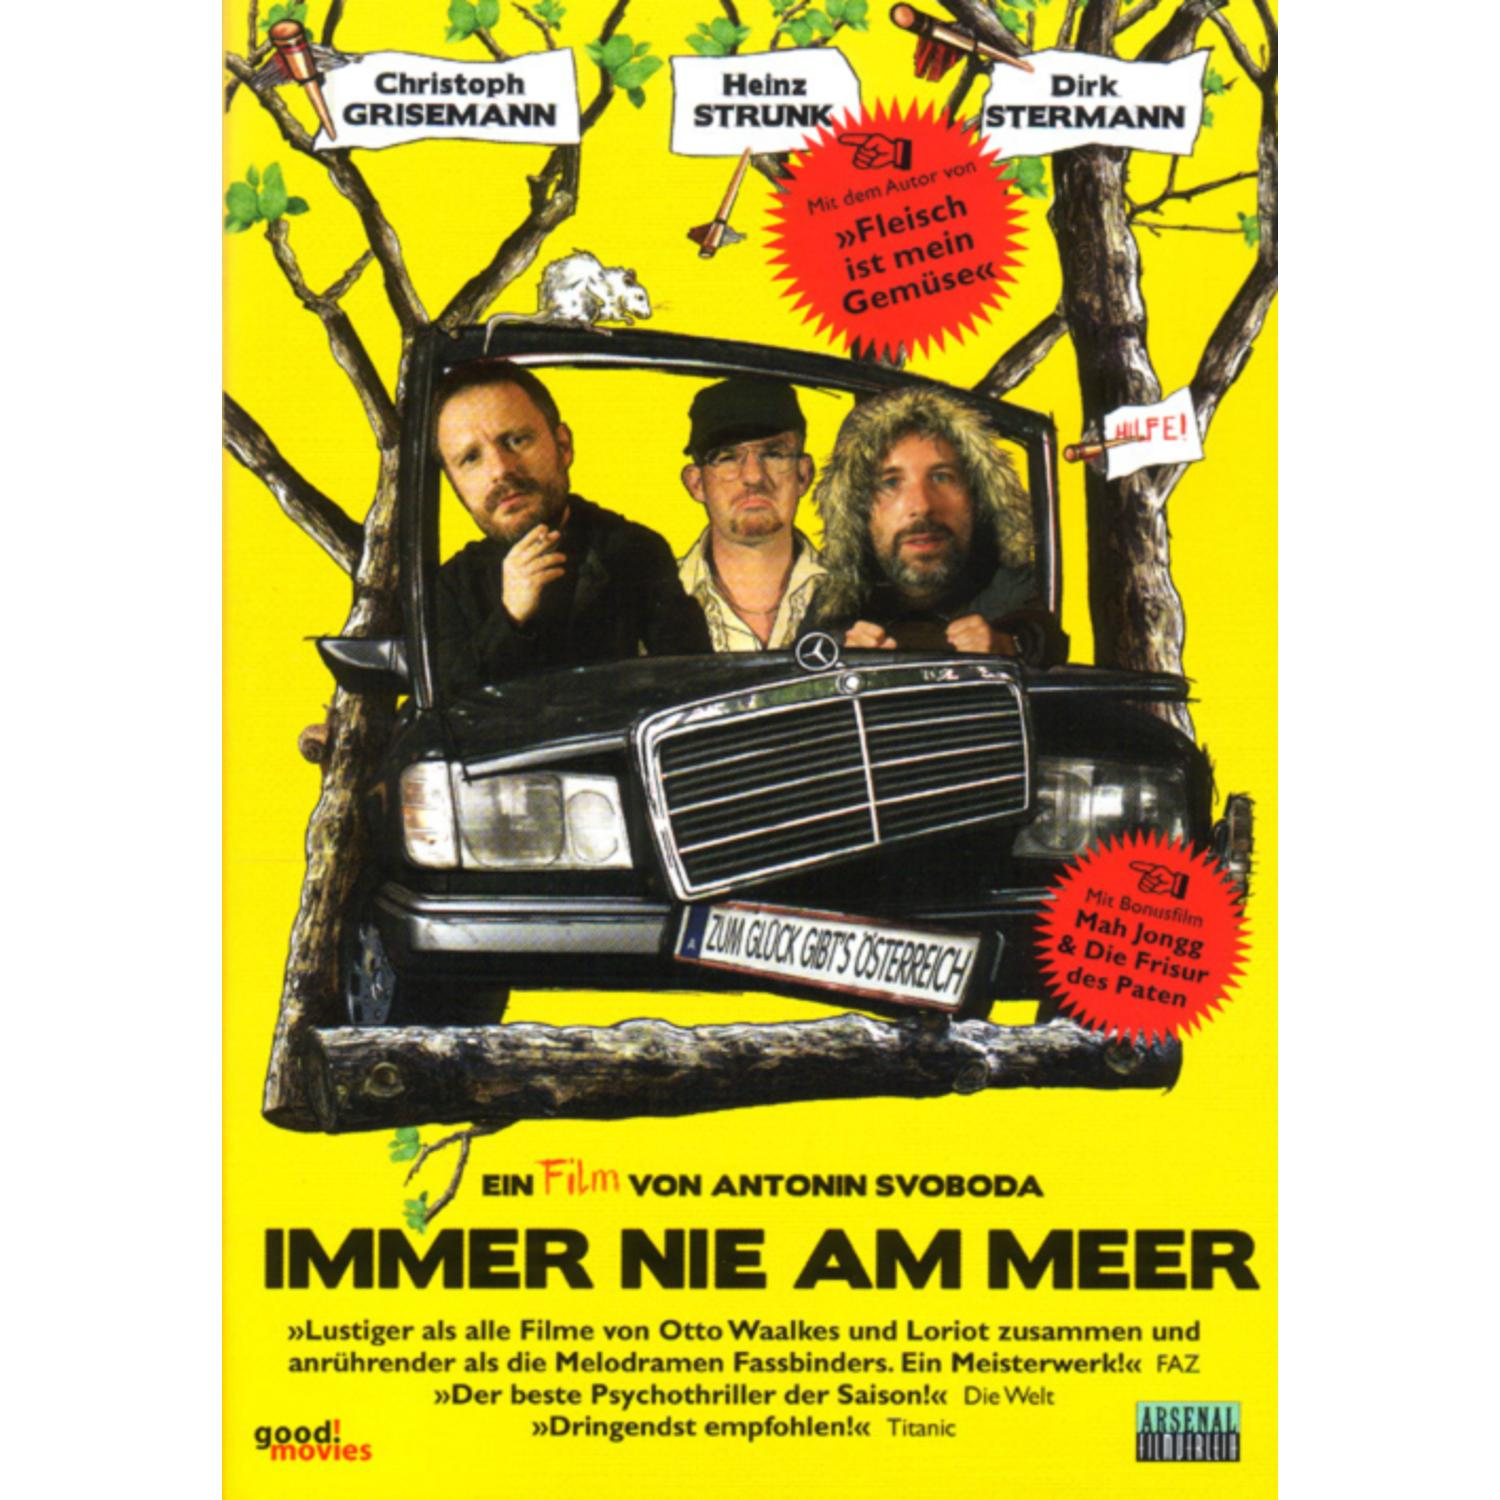 AM IMMER MEER DVD NIE